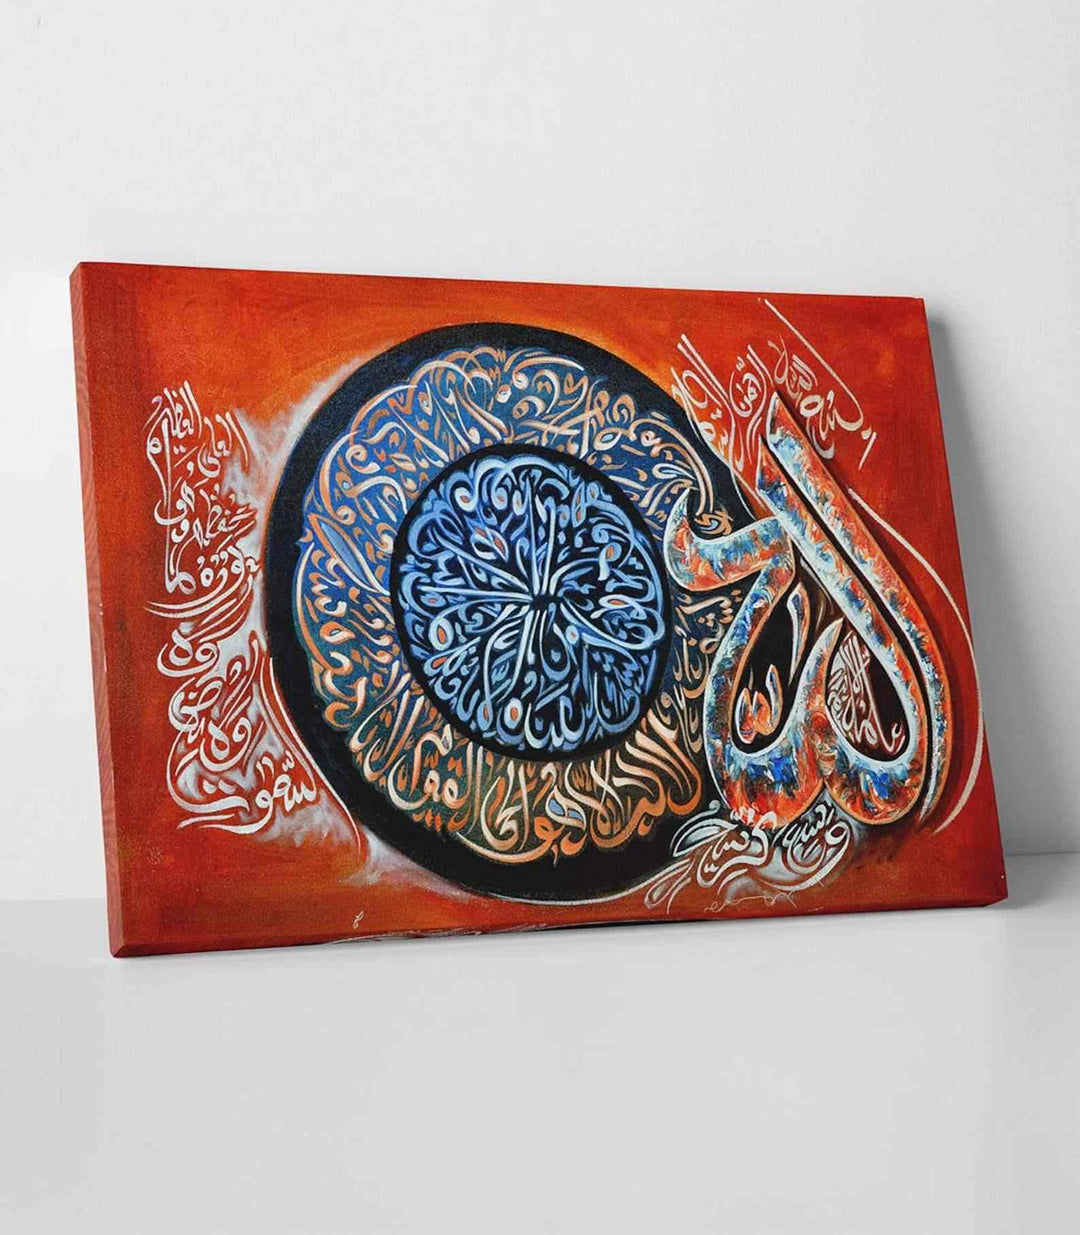 Ayatul Kursi v16 Oil Painting Reproduction Canvas Print Islamic Wall Art - Islamic Wall Art Store